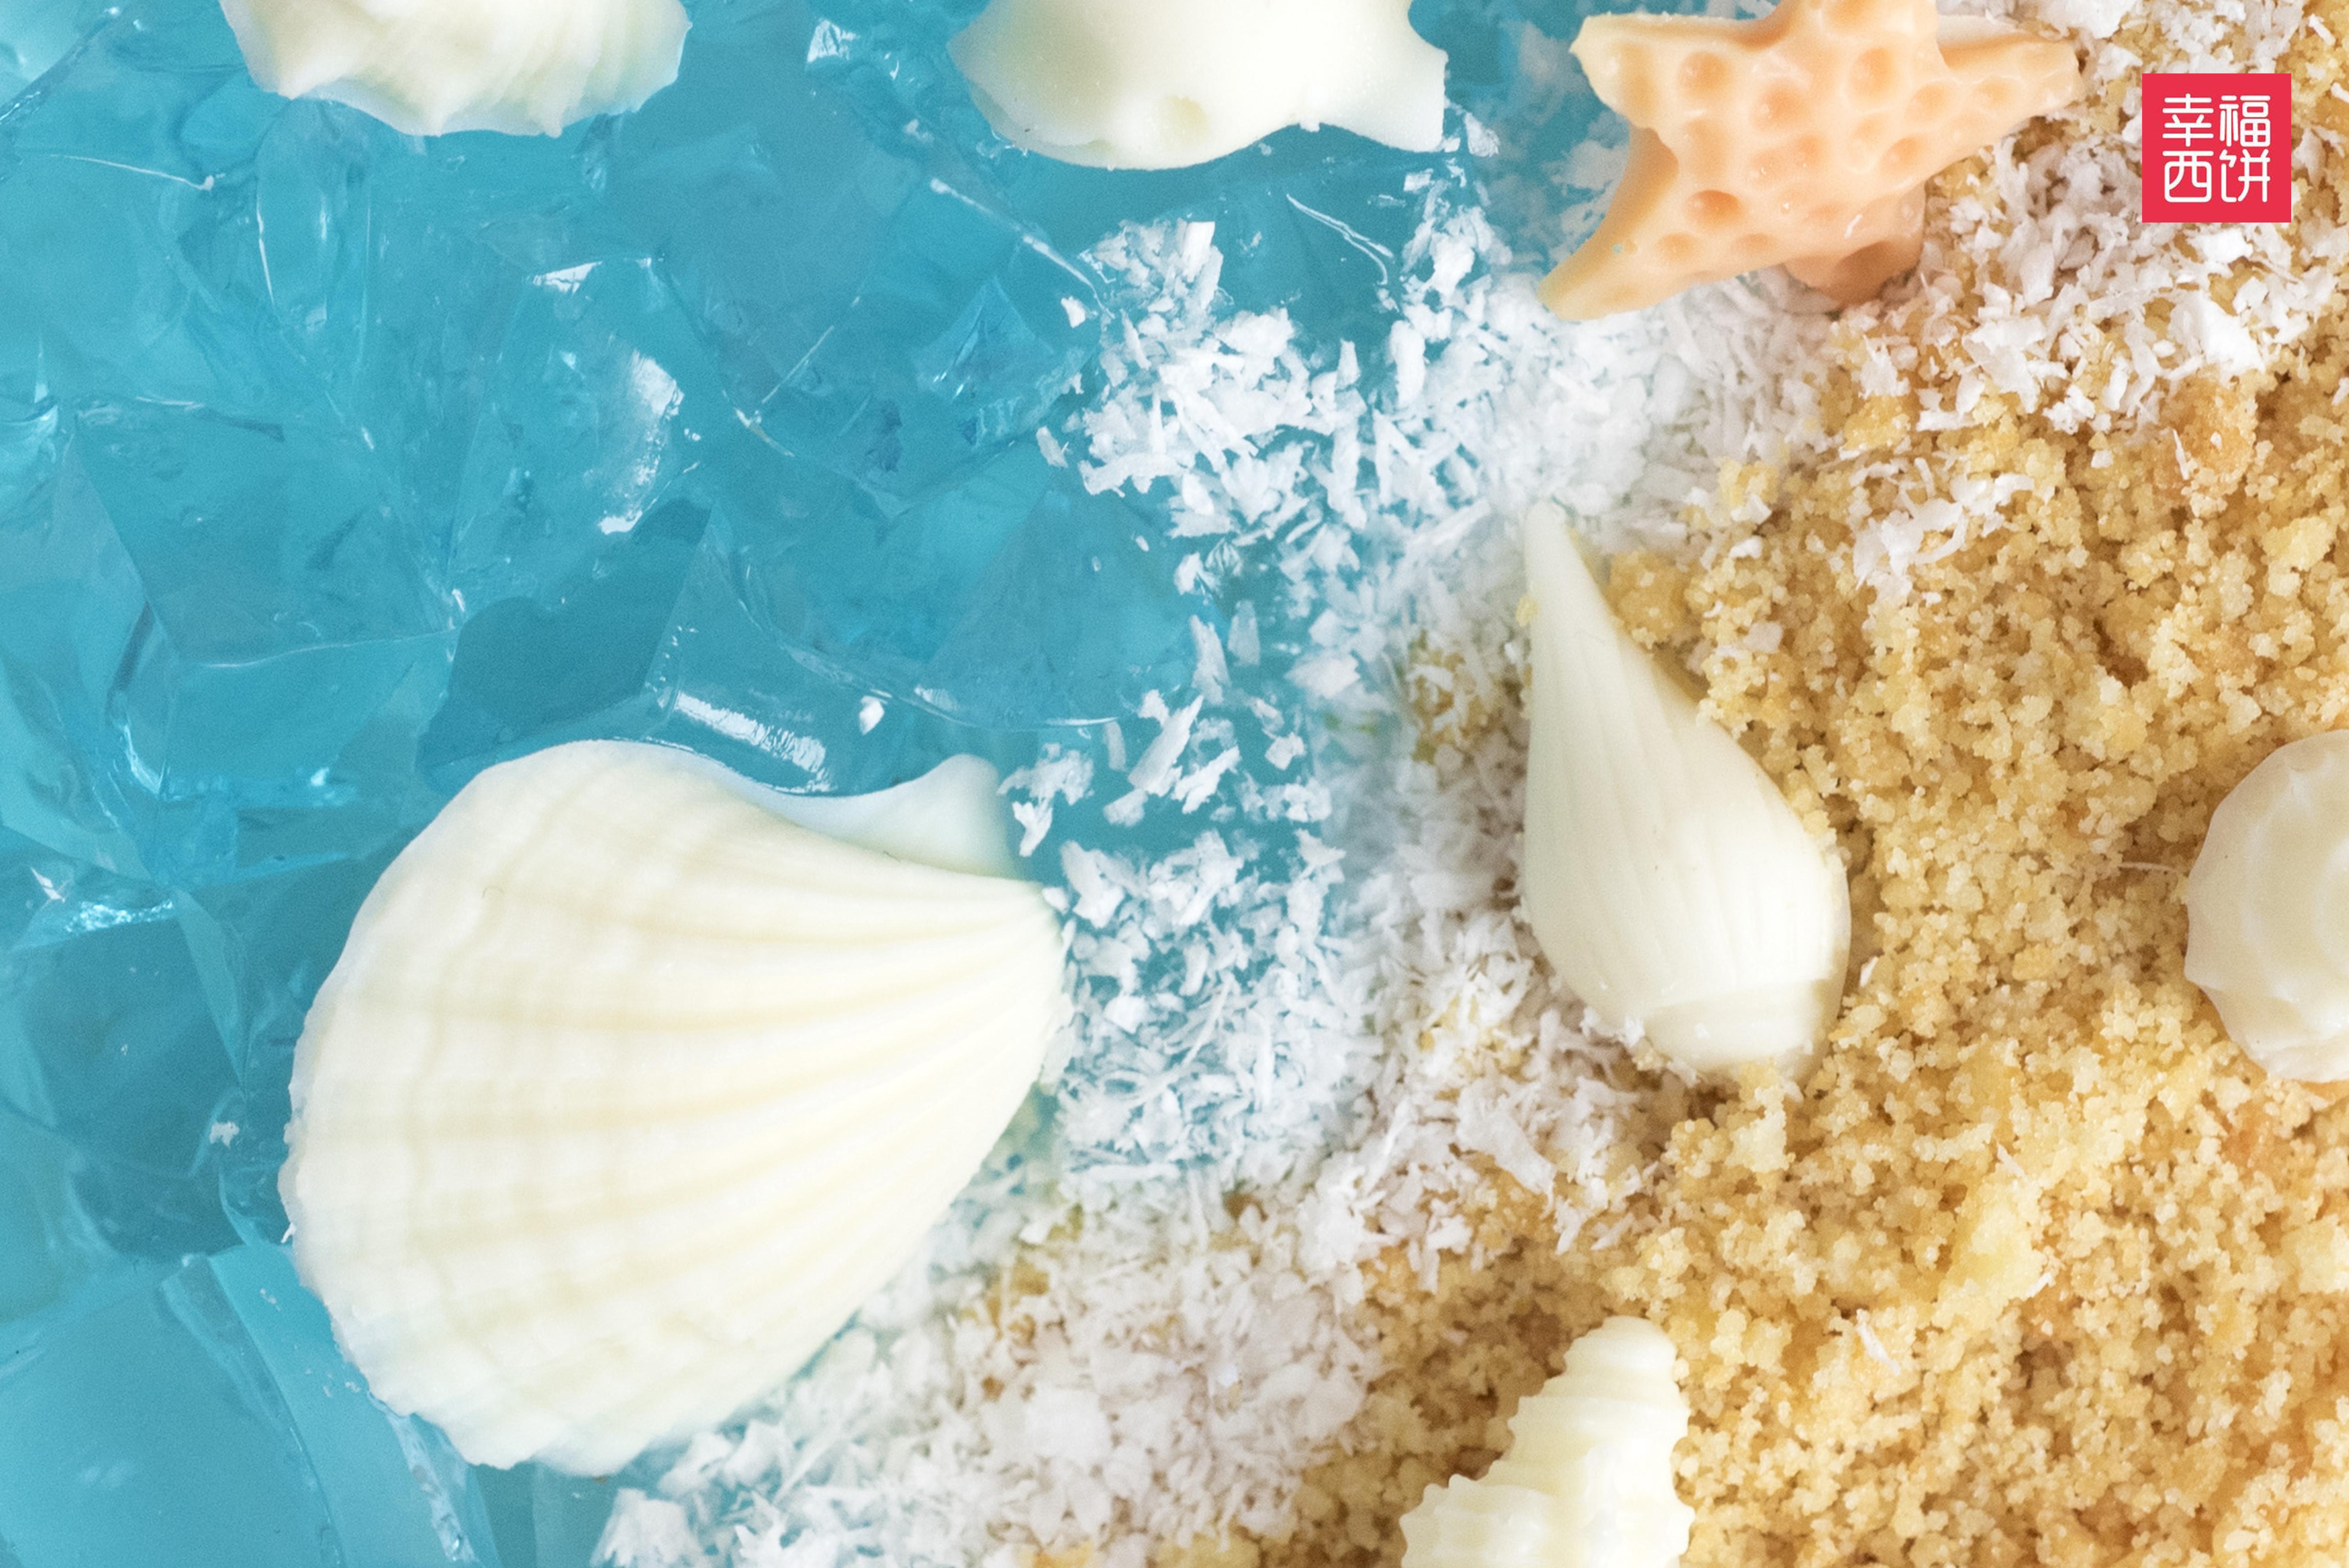 酸奶慕斯海洋蛋糕的做法_【图解】酸奶慕斯海洋蛋糕怎么做如何做好吃_酸奶慕斯海洋蛋糕家常做法大全_家有厨娃_豆果美食